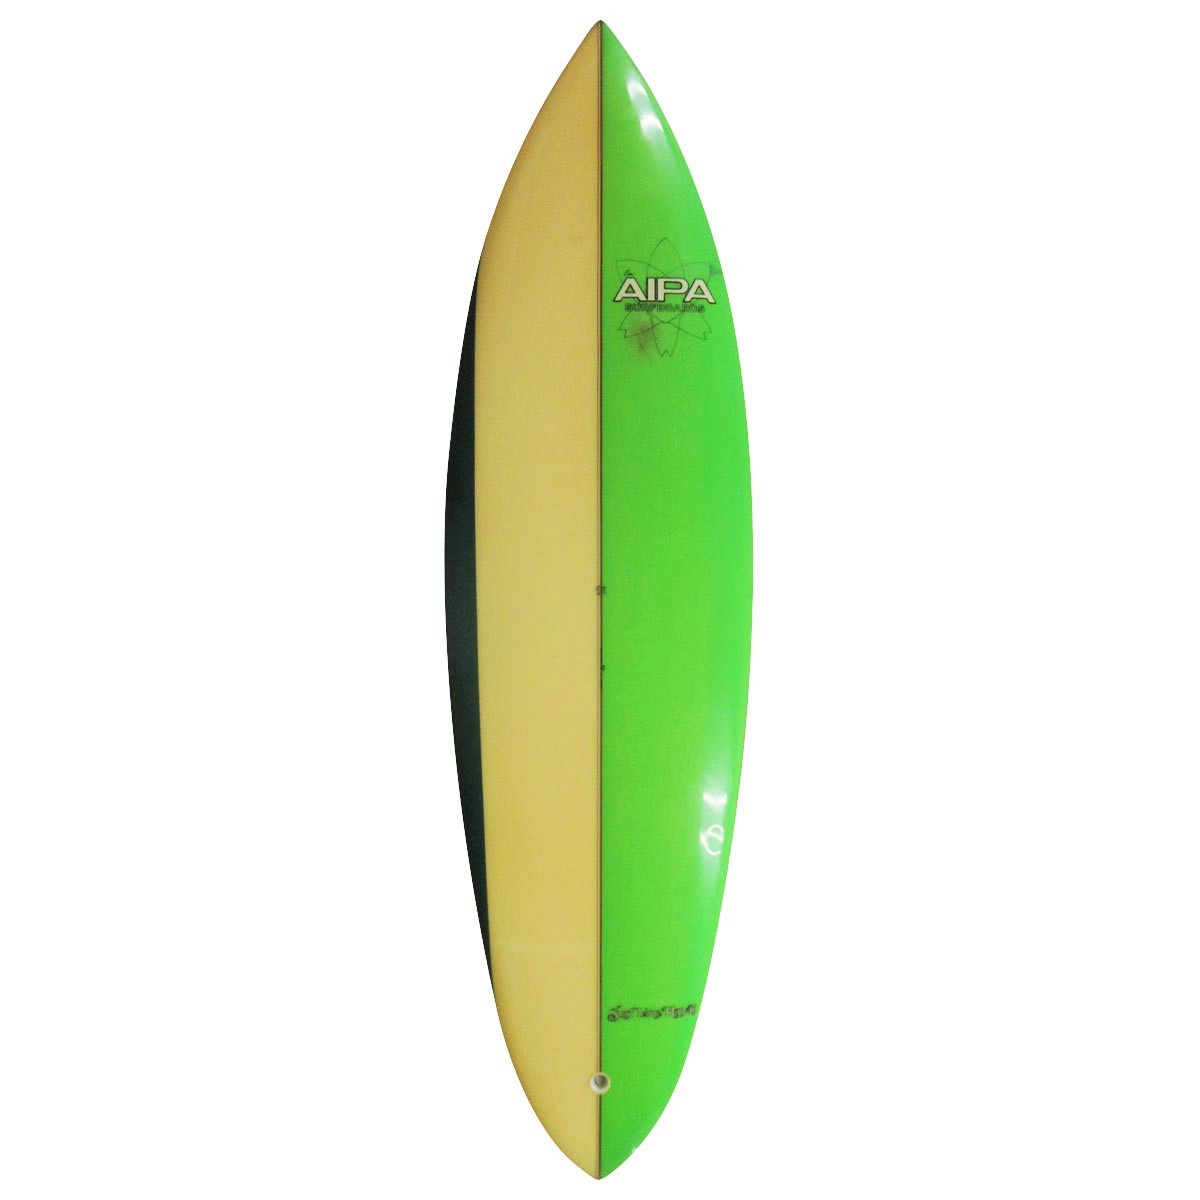 SURF LINE HAWAII BEN AIPA / Surf Line Hawaii Ben Aipa / 70`S Twin Pin 6`3 Shaped by Ben Aipa 